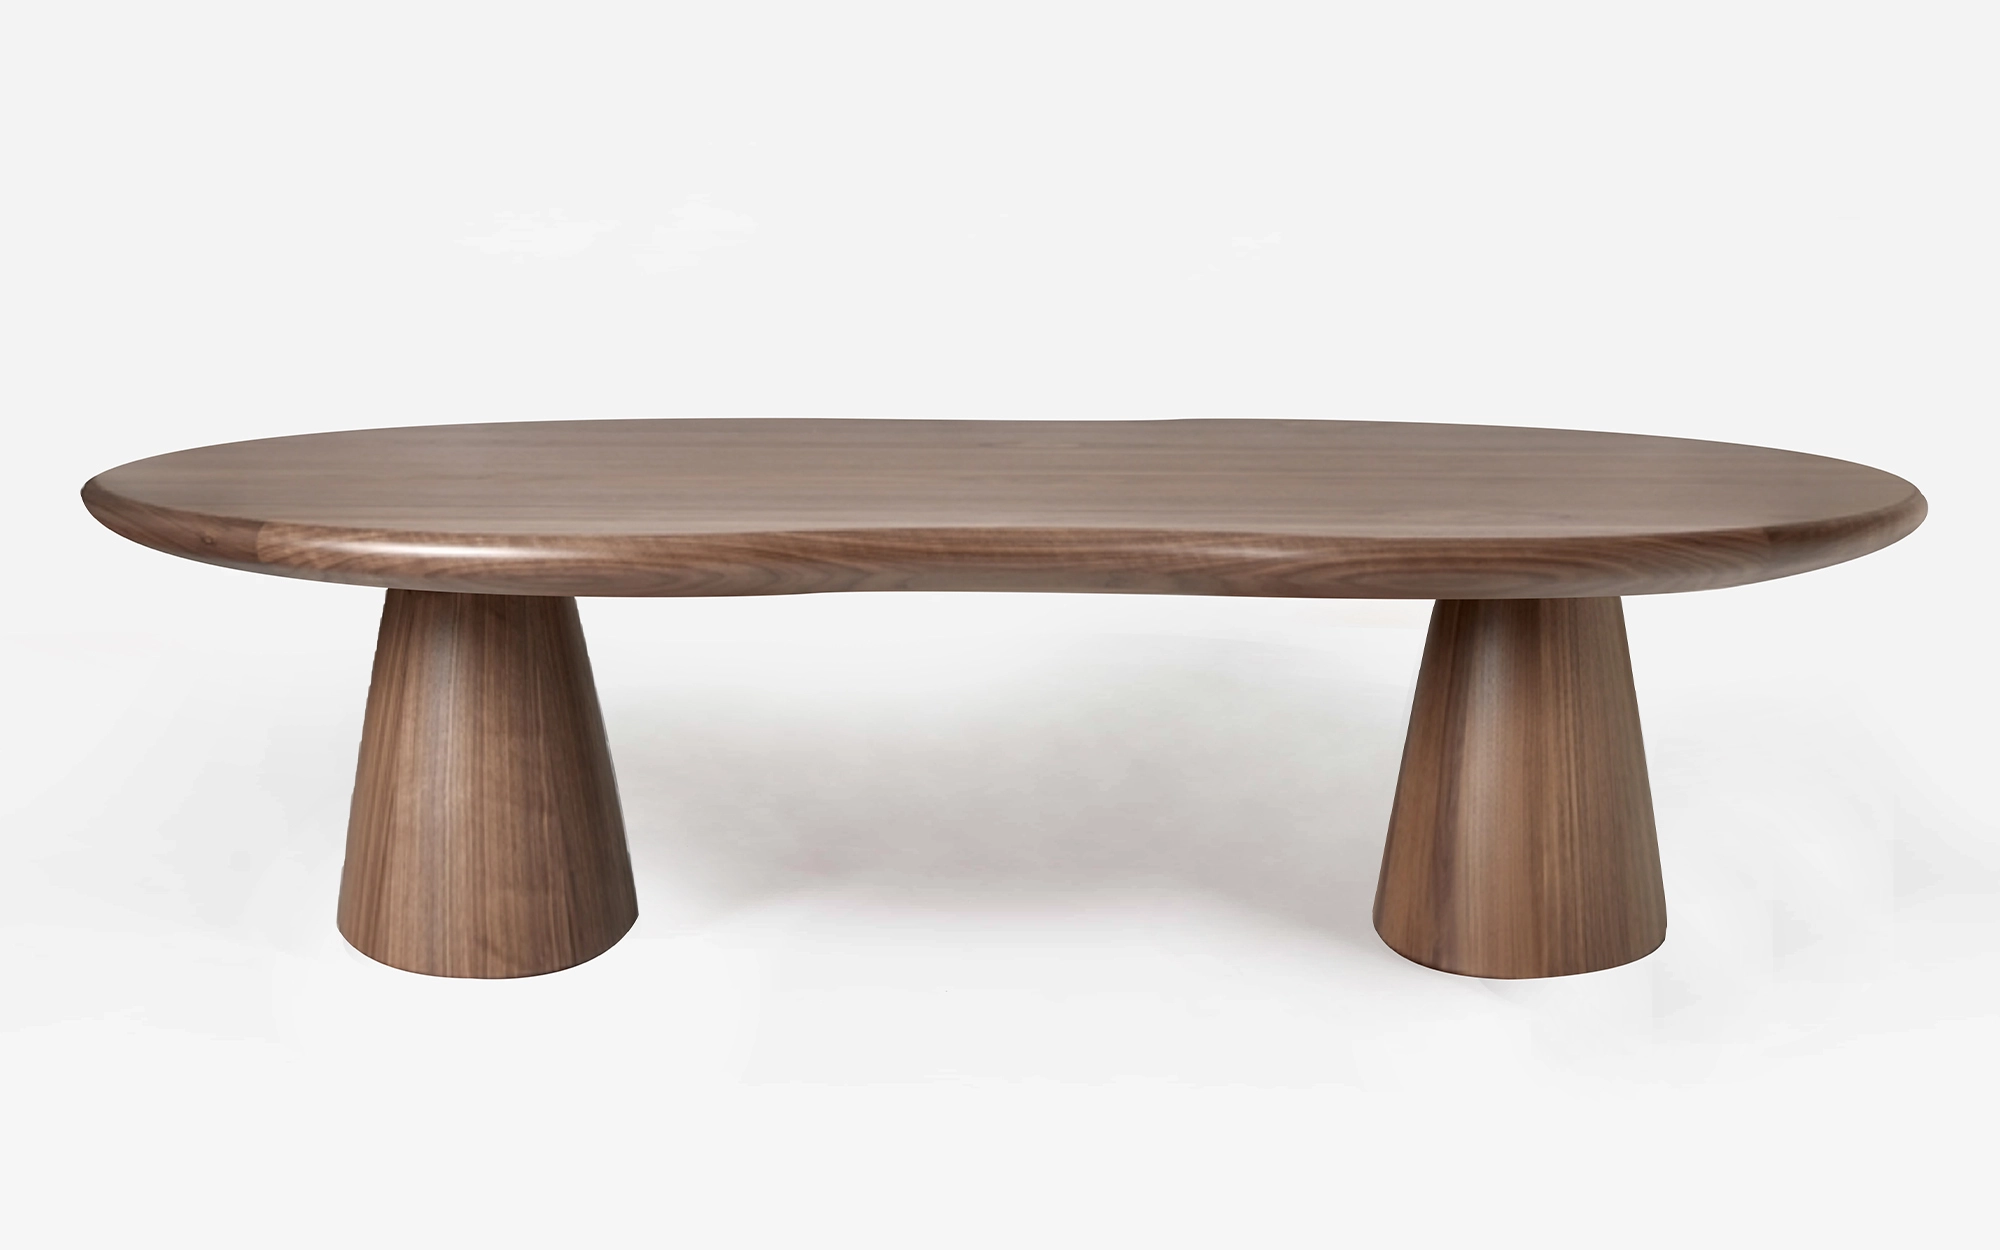 Firenze Table - Alessandro Mendini - Sofa - Galerie kreo